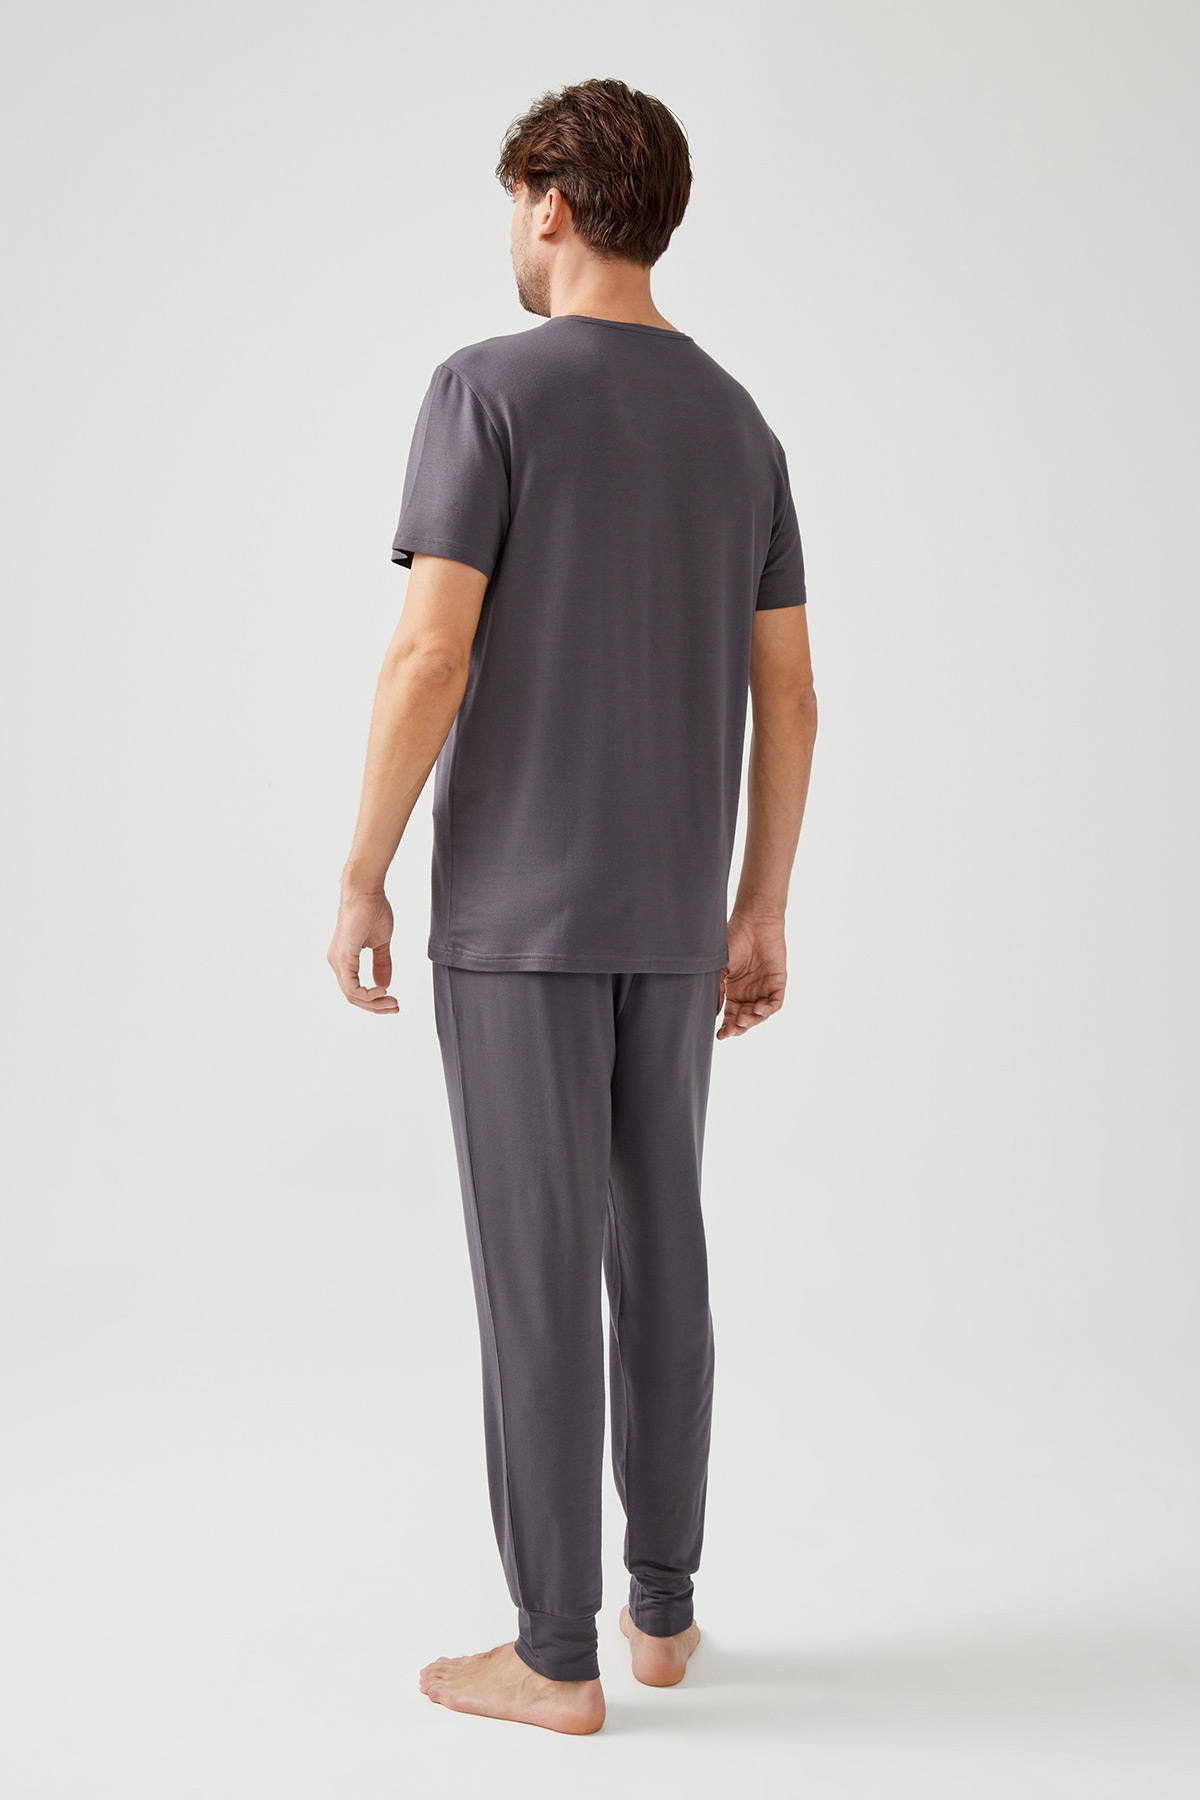 Erkek Modal İki İplik Kısa Kollu Tshirt Paçası Manşetli Uzun Eşofman Takımı